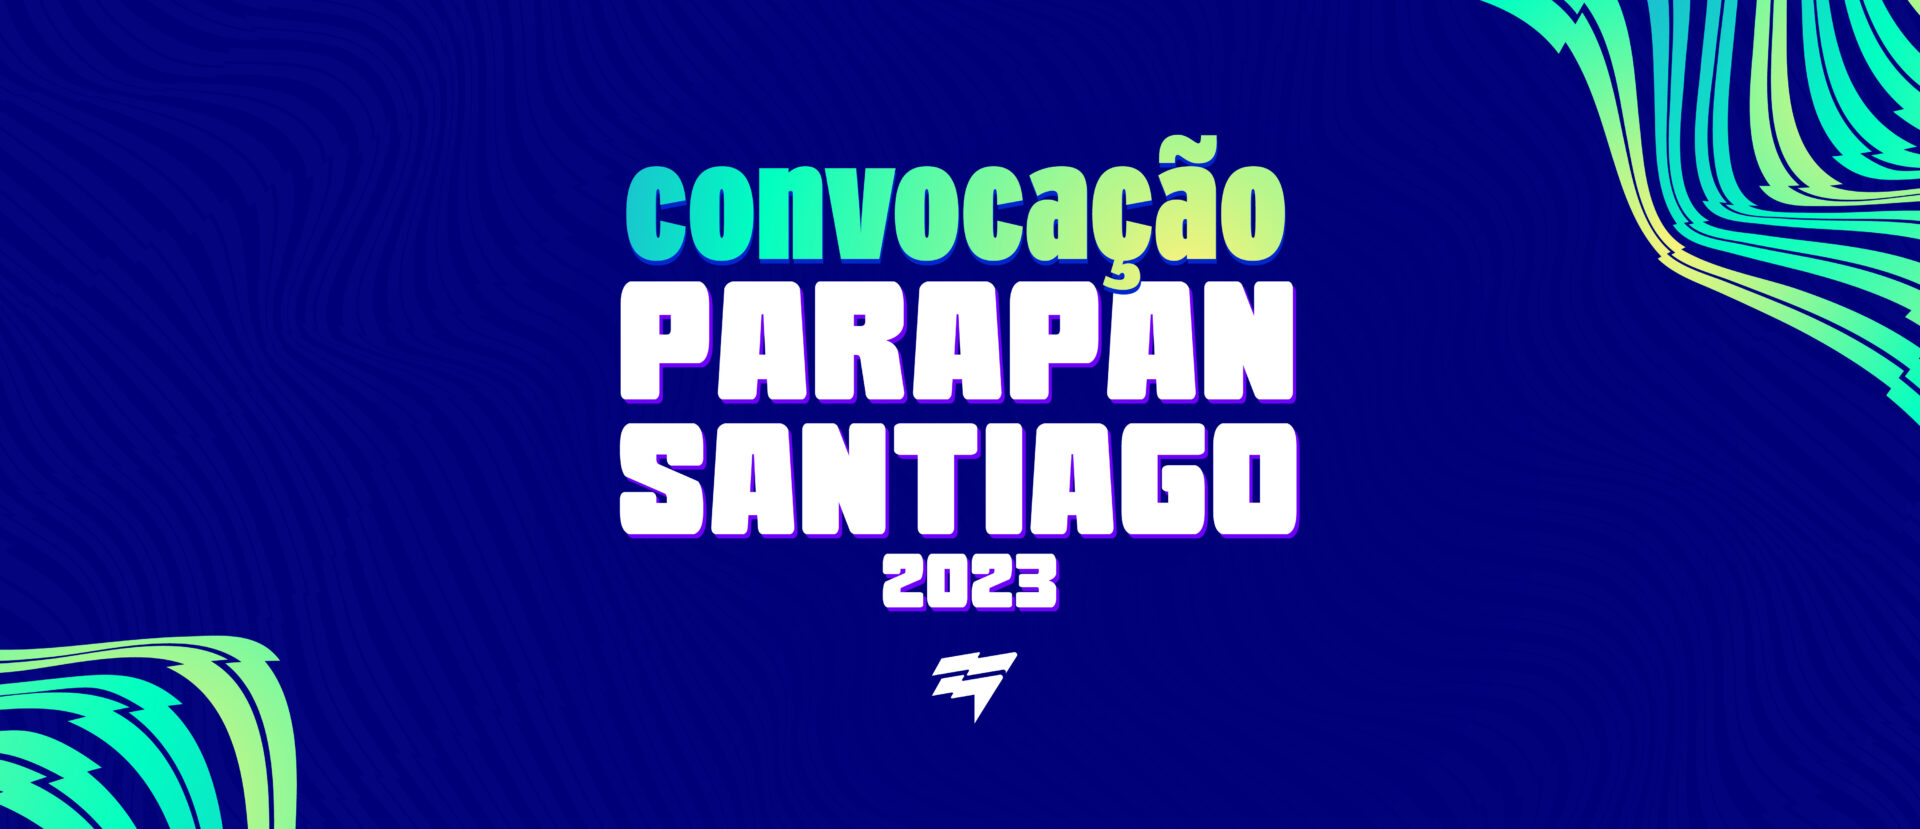 Parapan Santiago 2023: Conoce a los deportistas convocados de atletismo, boccia, baloncesto en CR, fútbol para ciegos y tenis en CR